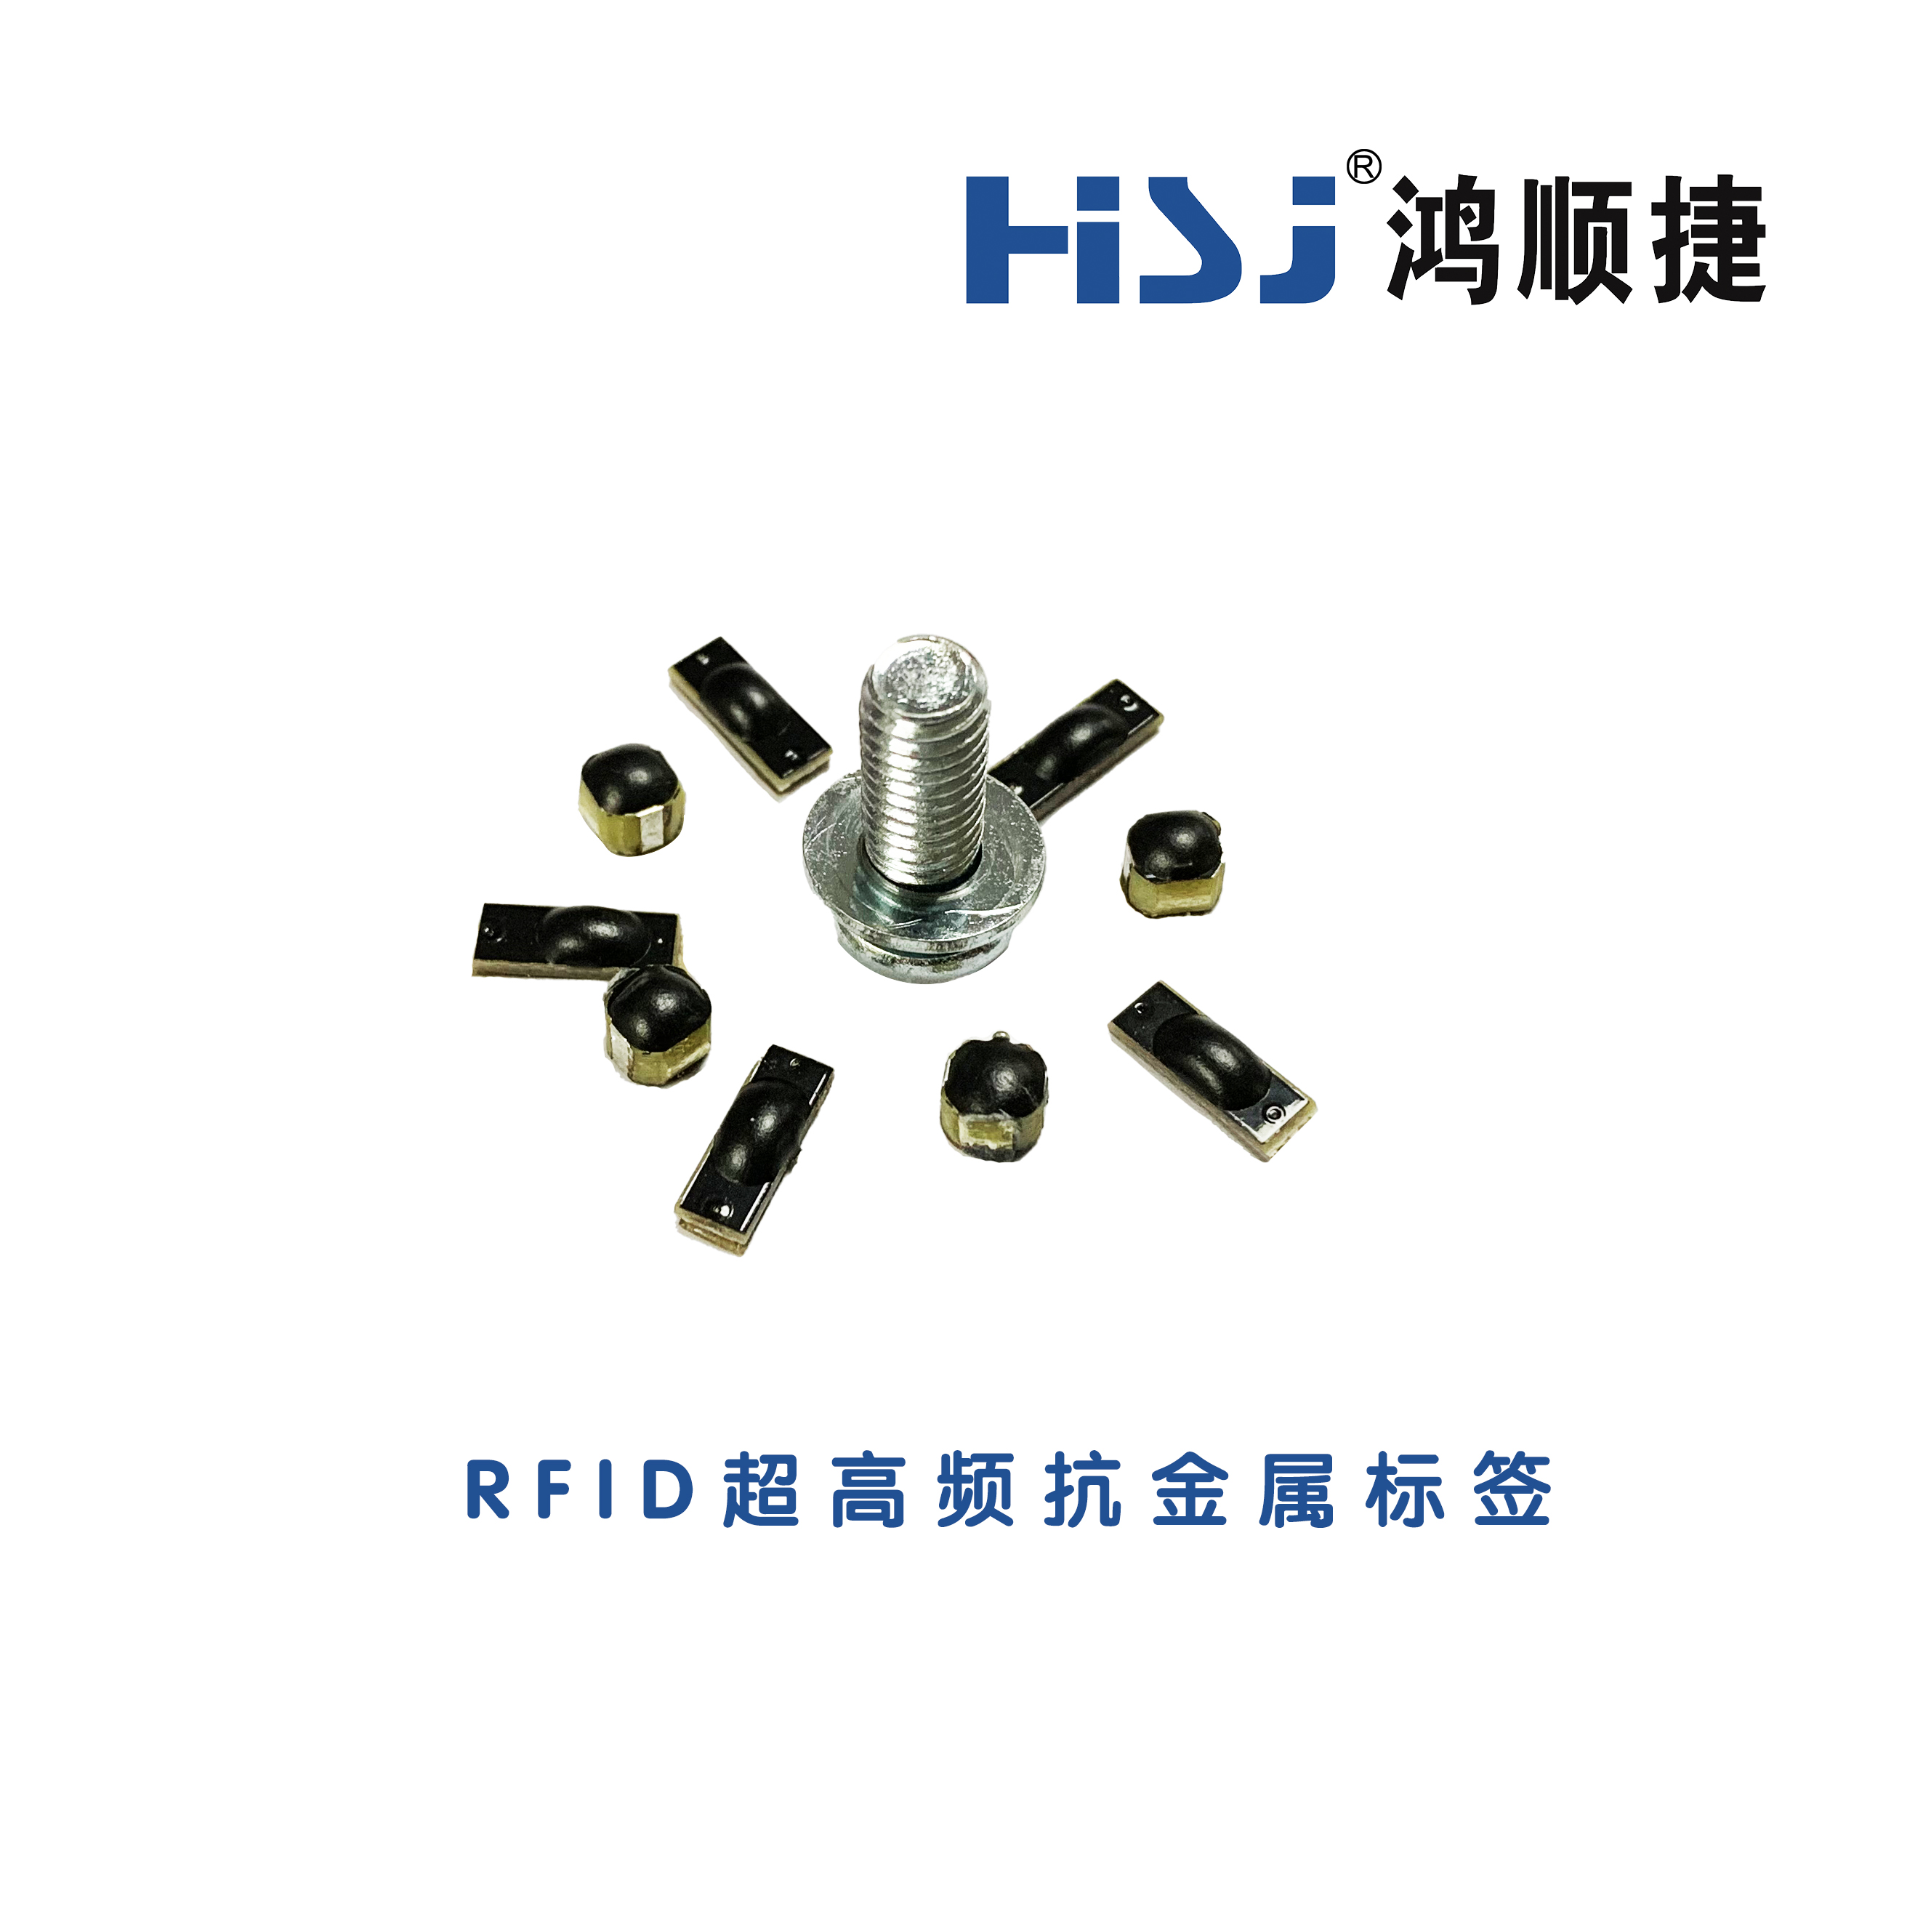 工具管理上的RFID应用有哪些 